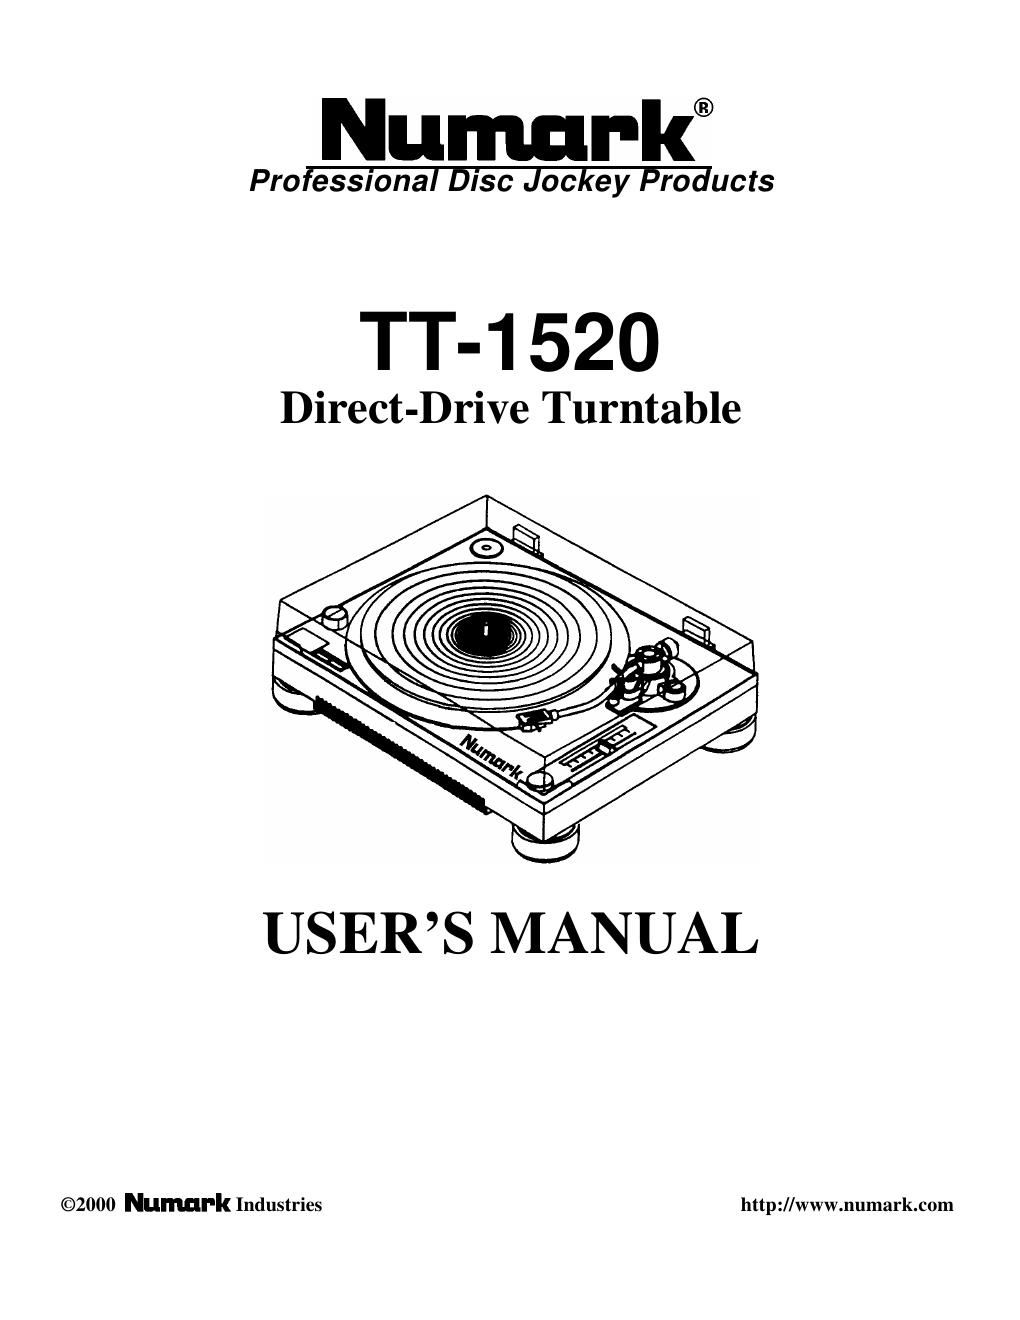 Free Audio Service Manuals - download numark tt 1520 manual